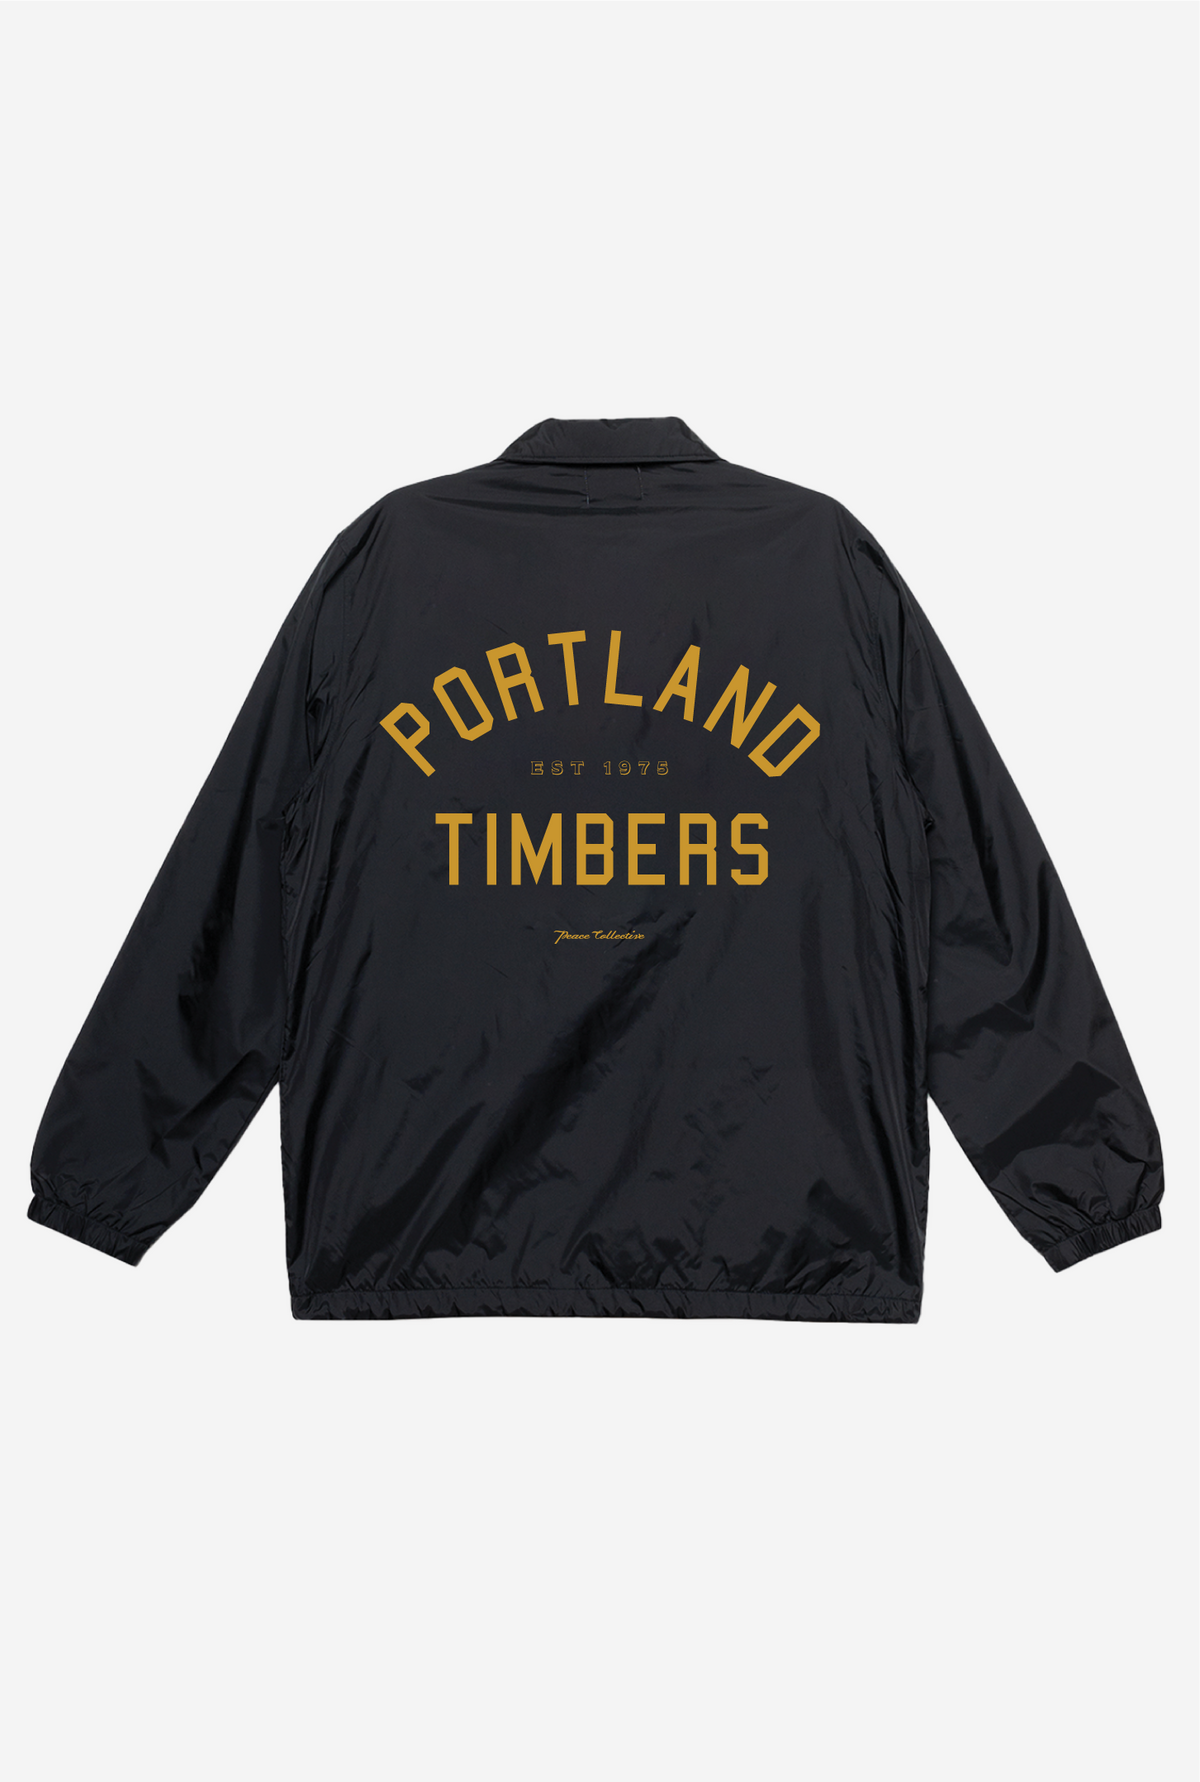 Portland Timbers Coach Jacket - Black